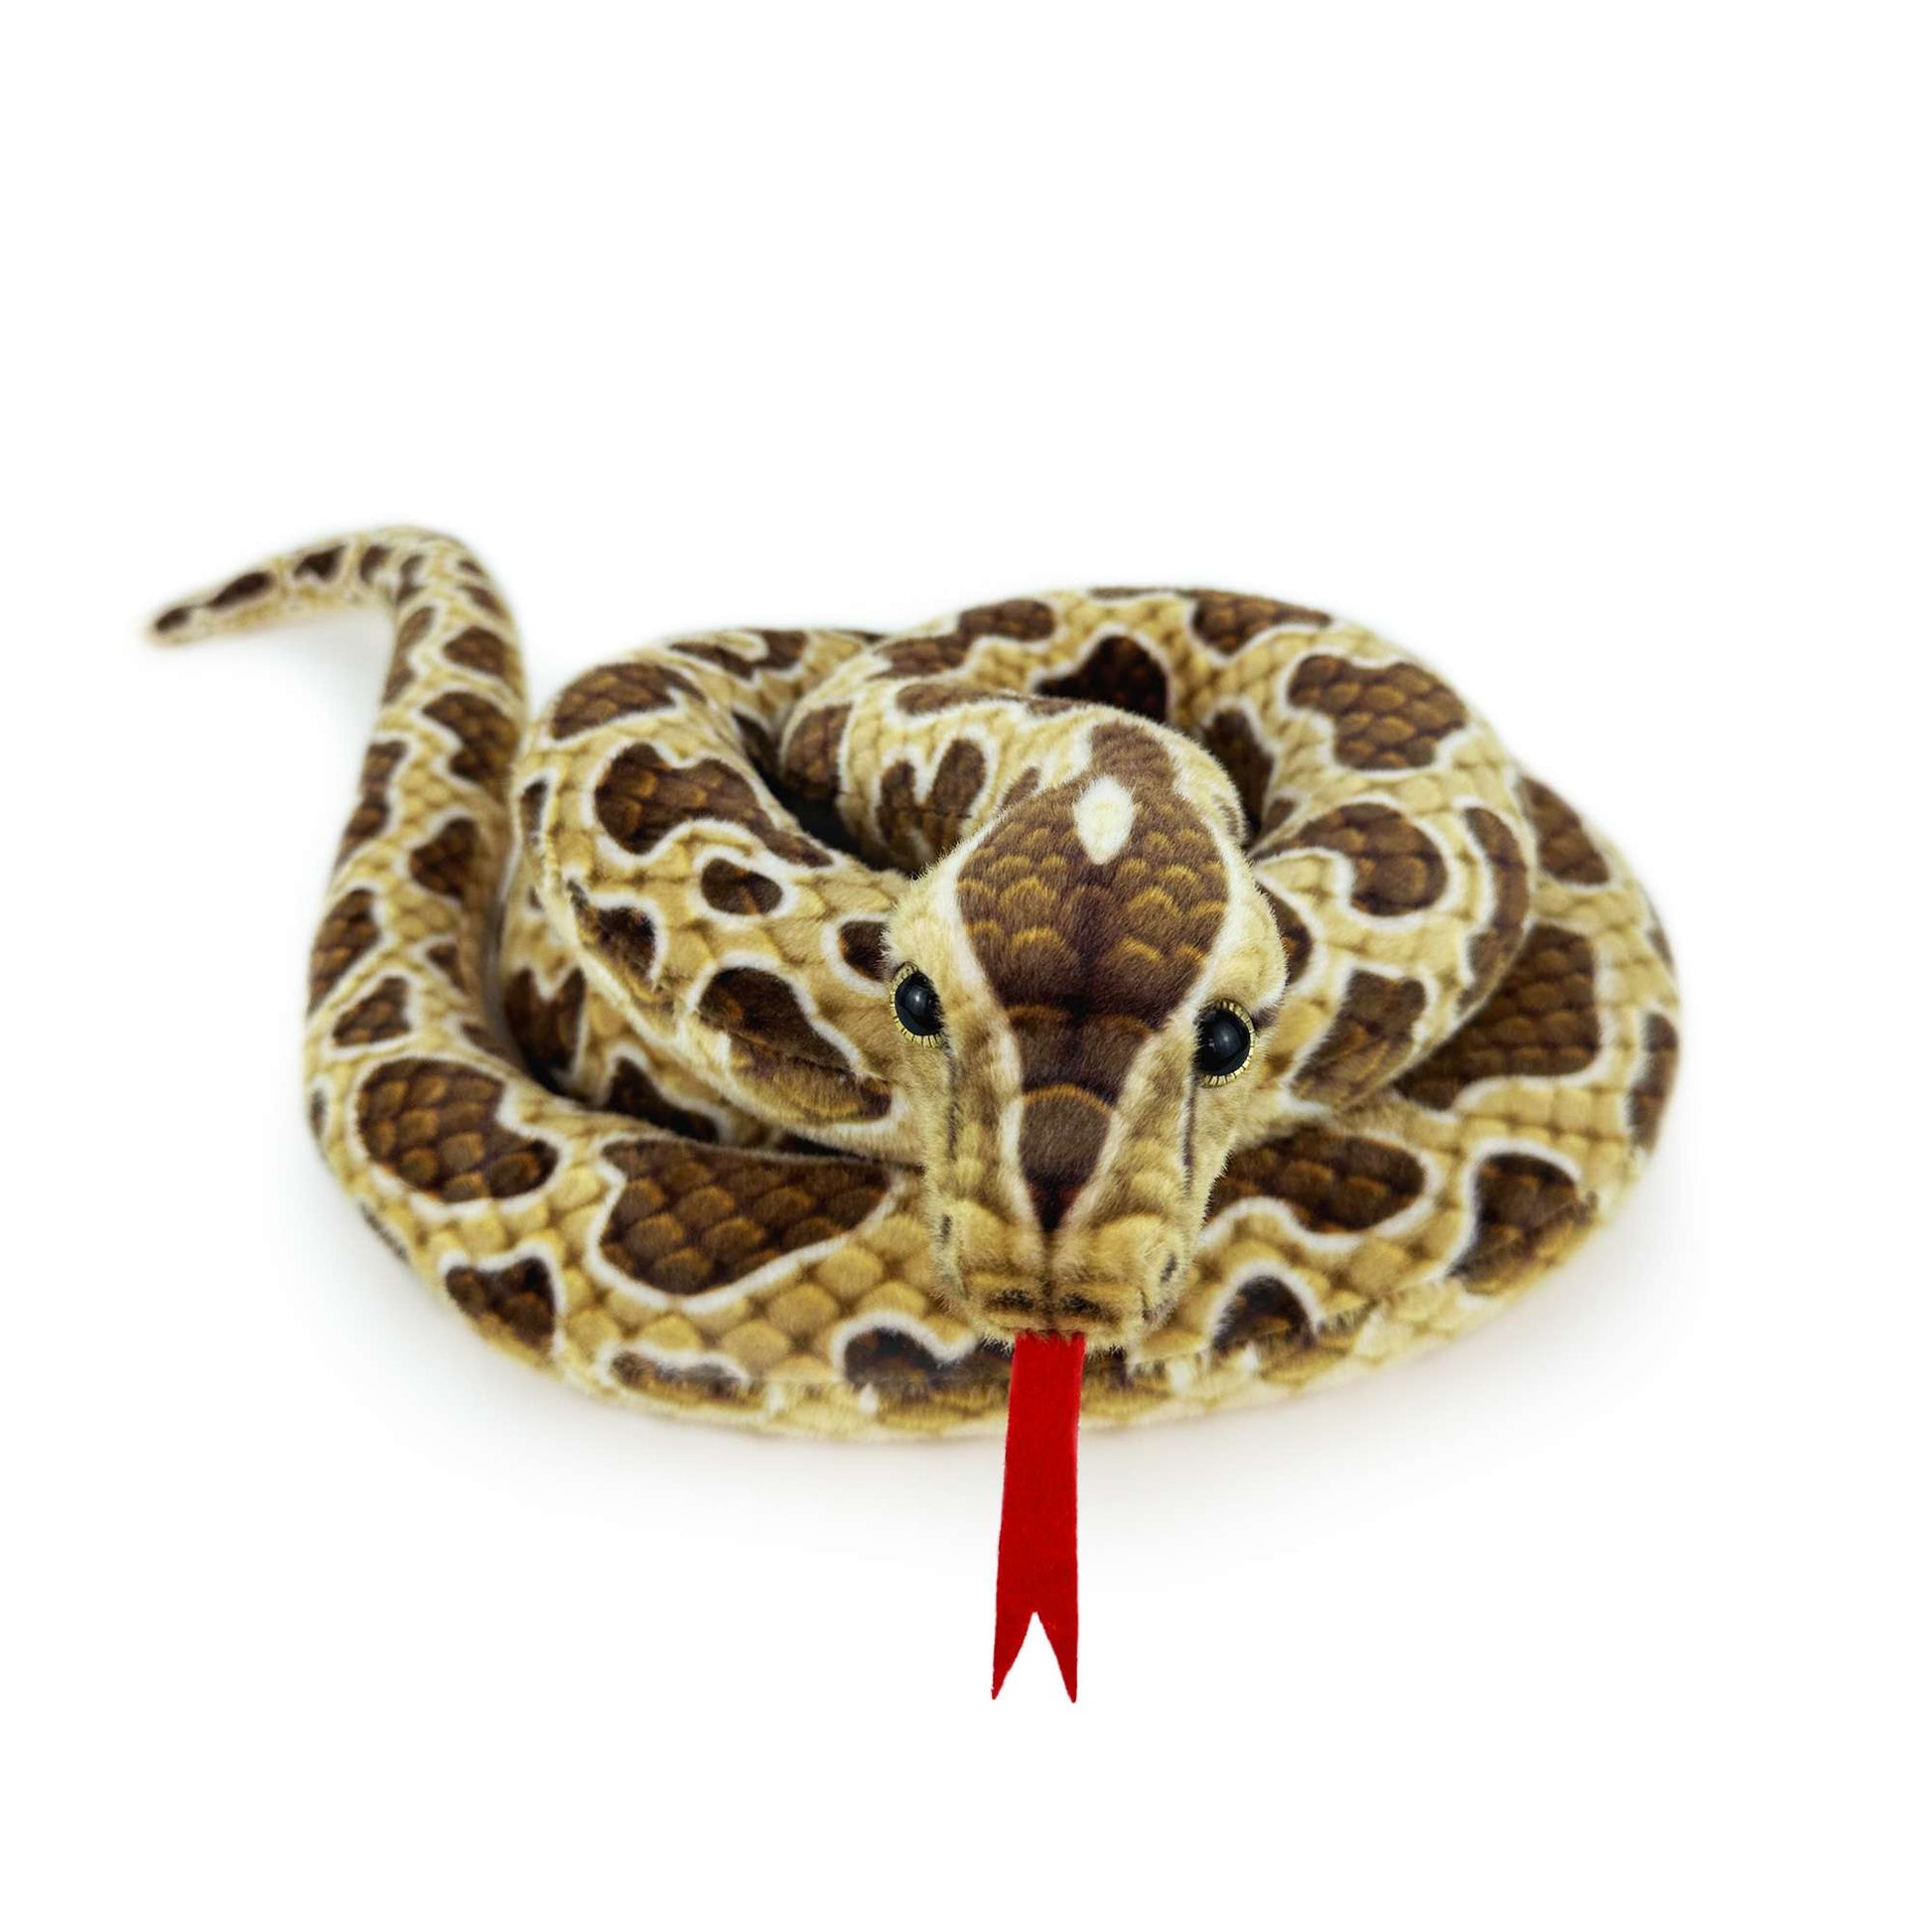 Realistic Lifelook stuffed animal snakes 